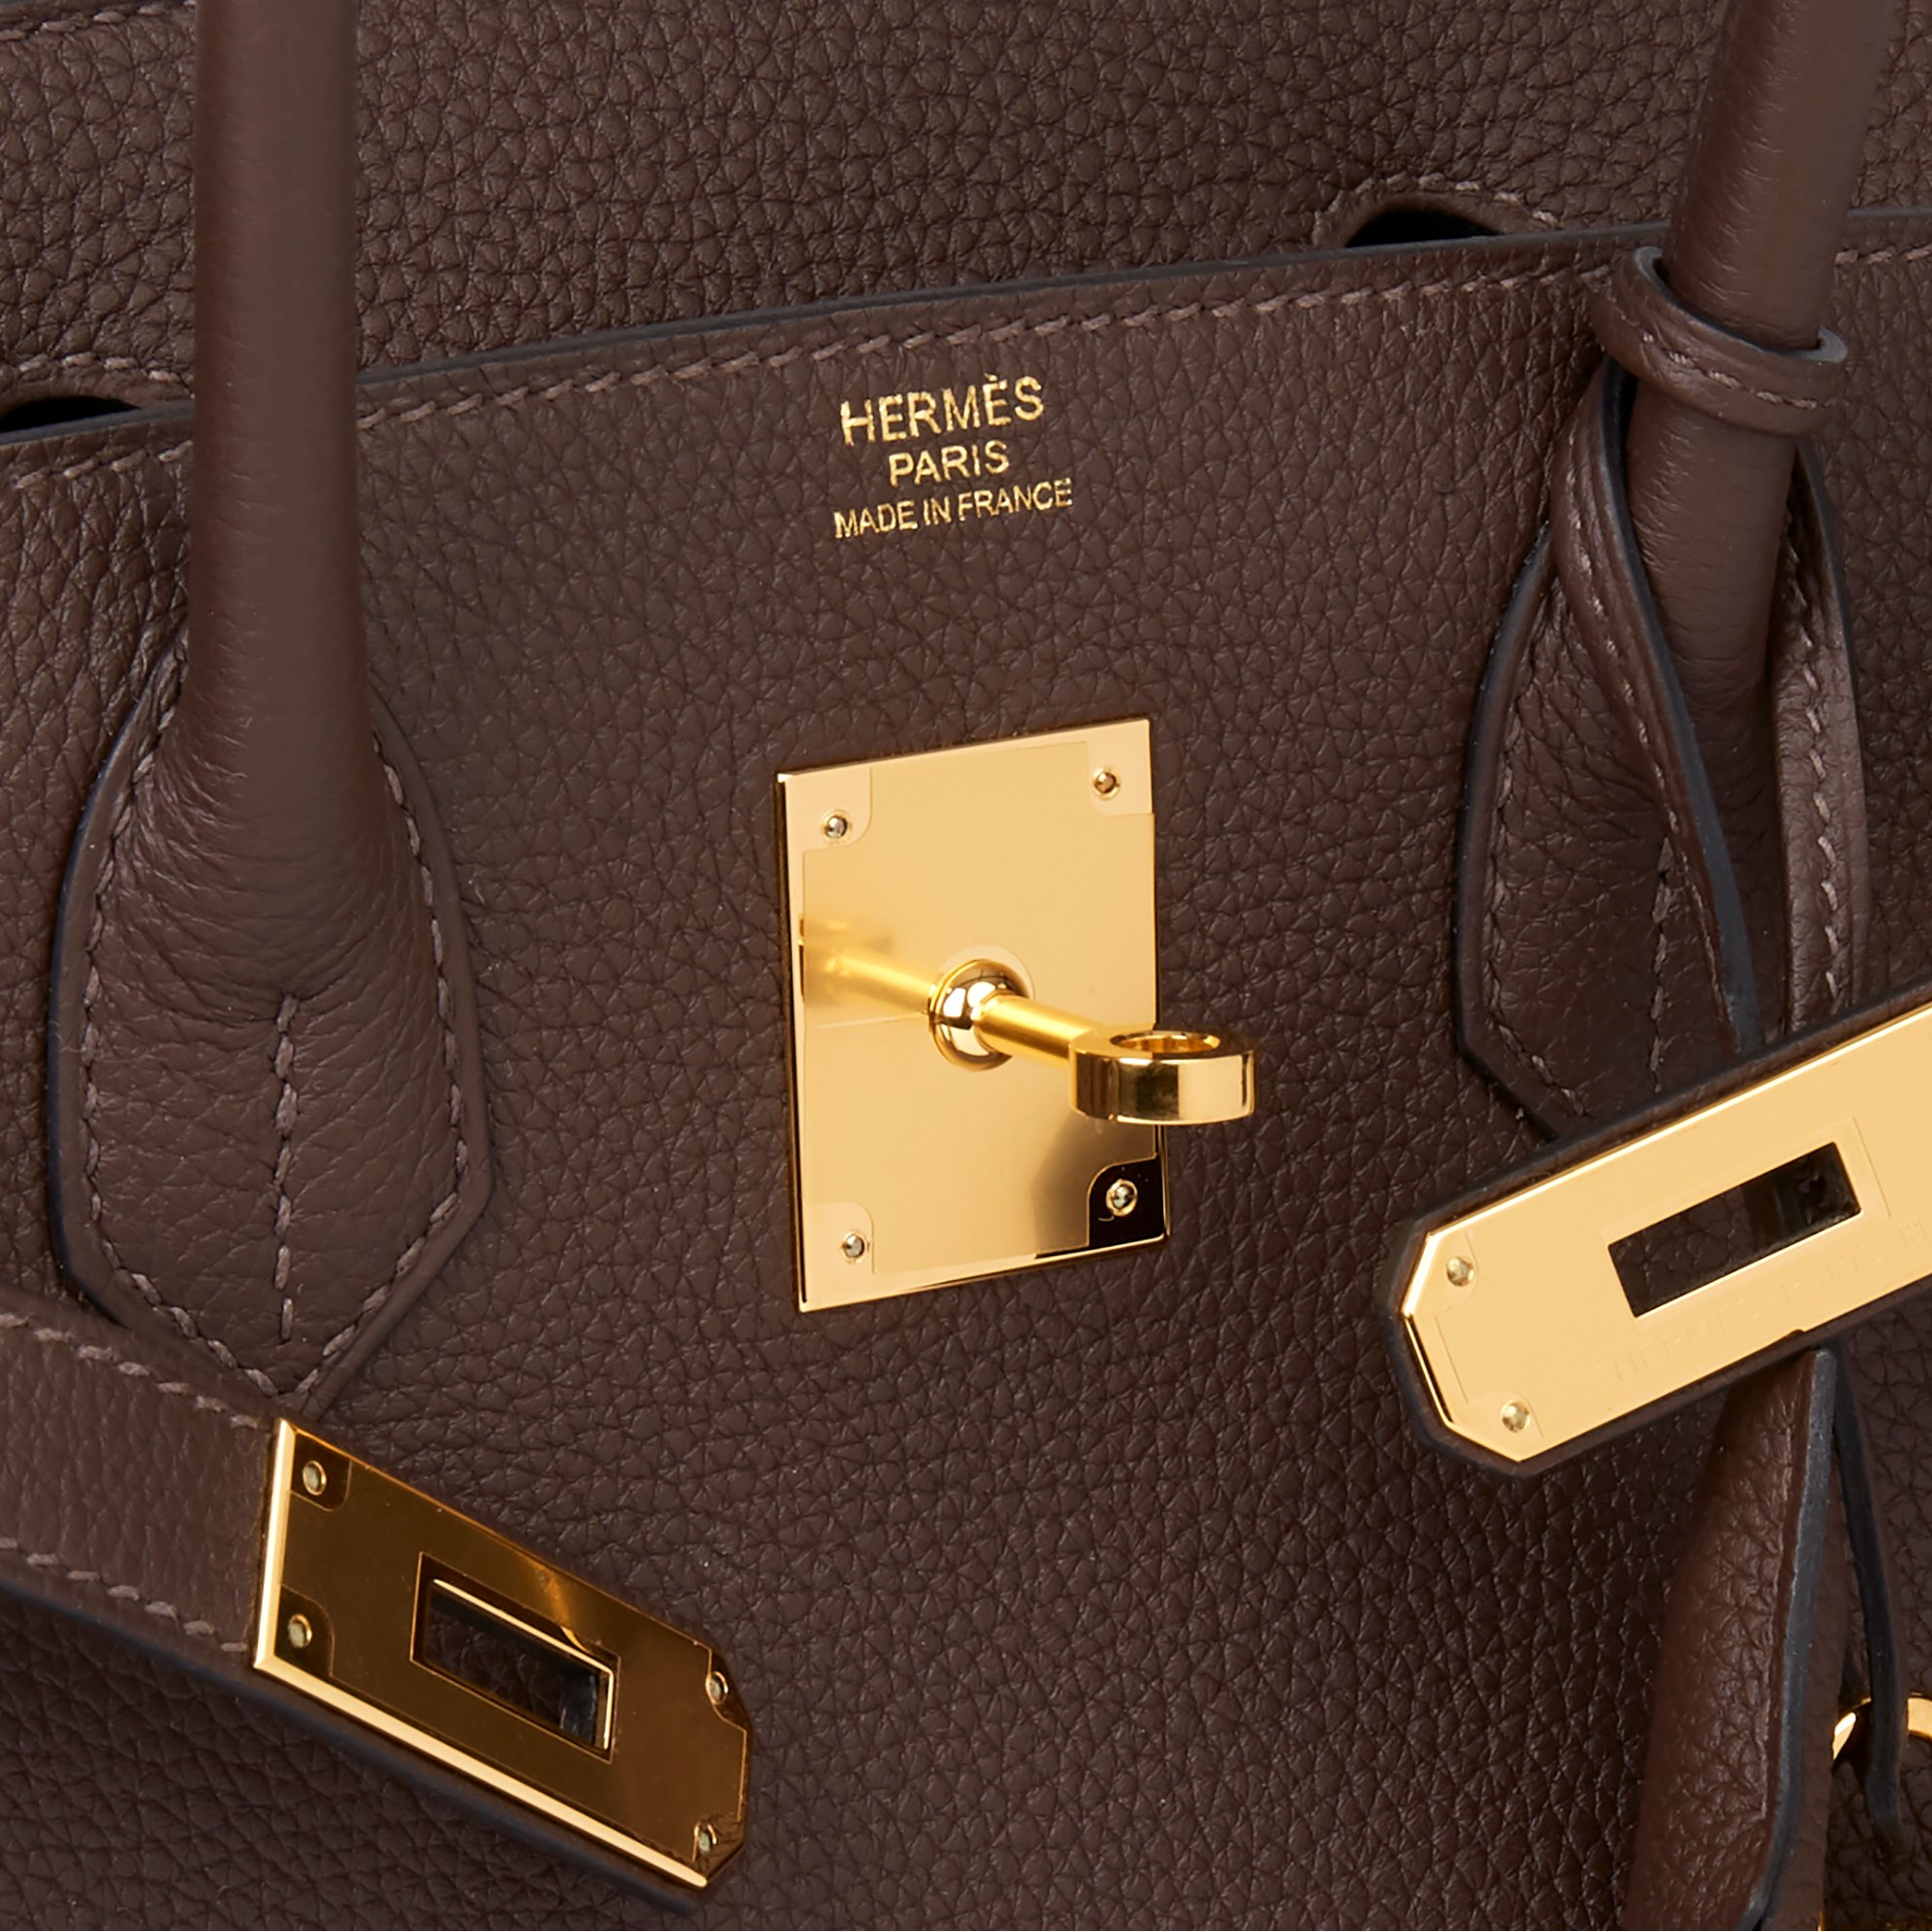 hermes bag price 2018